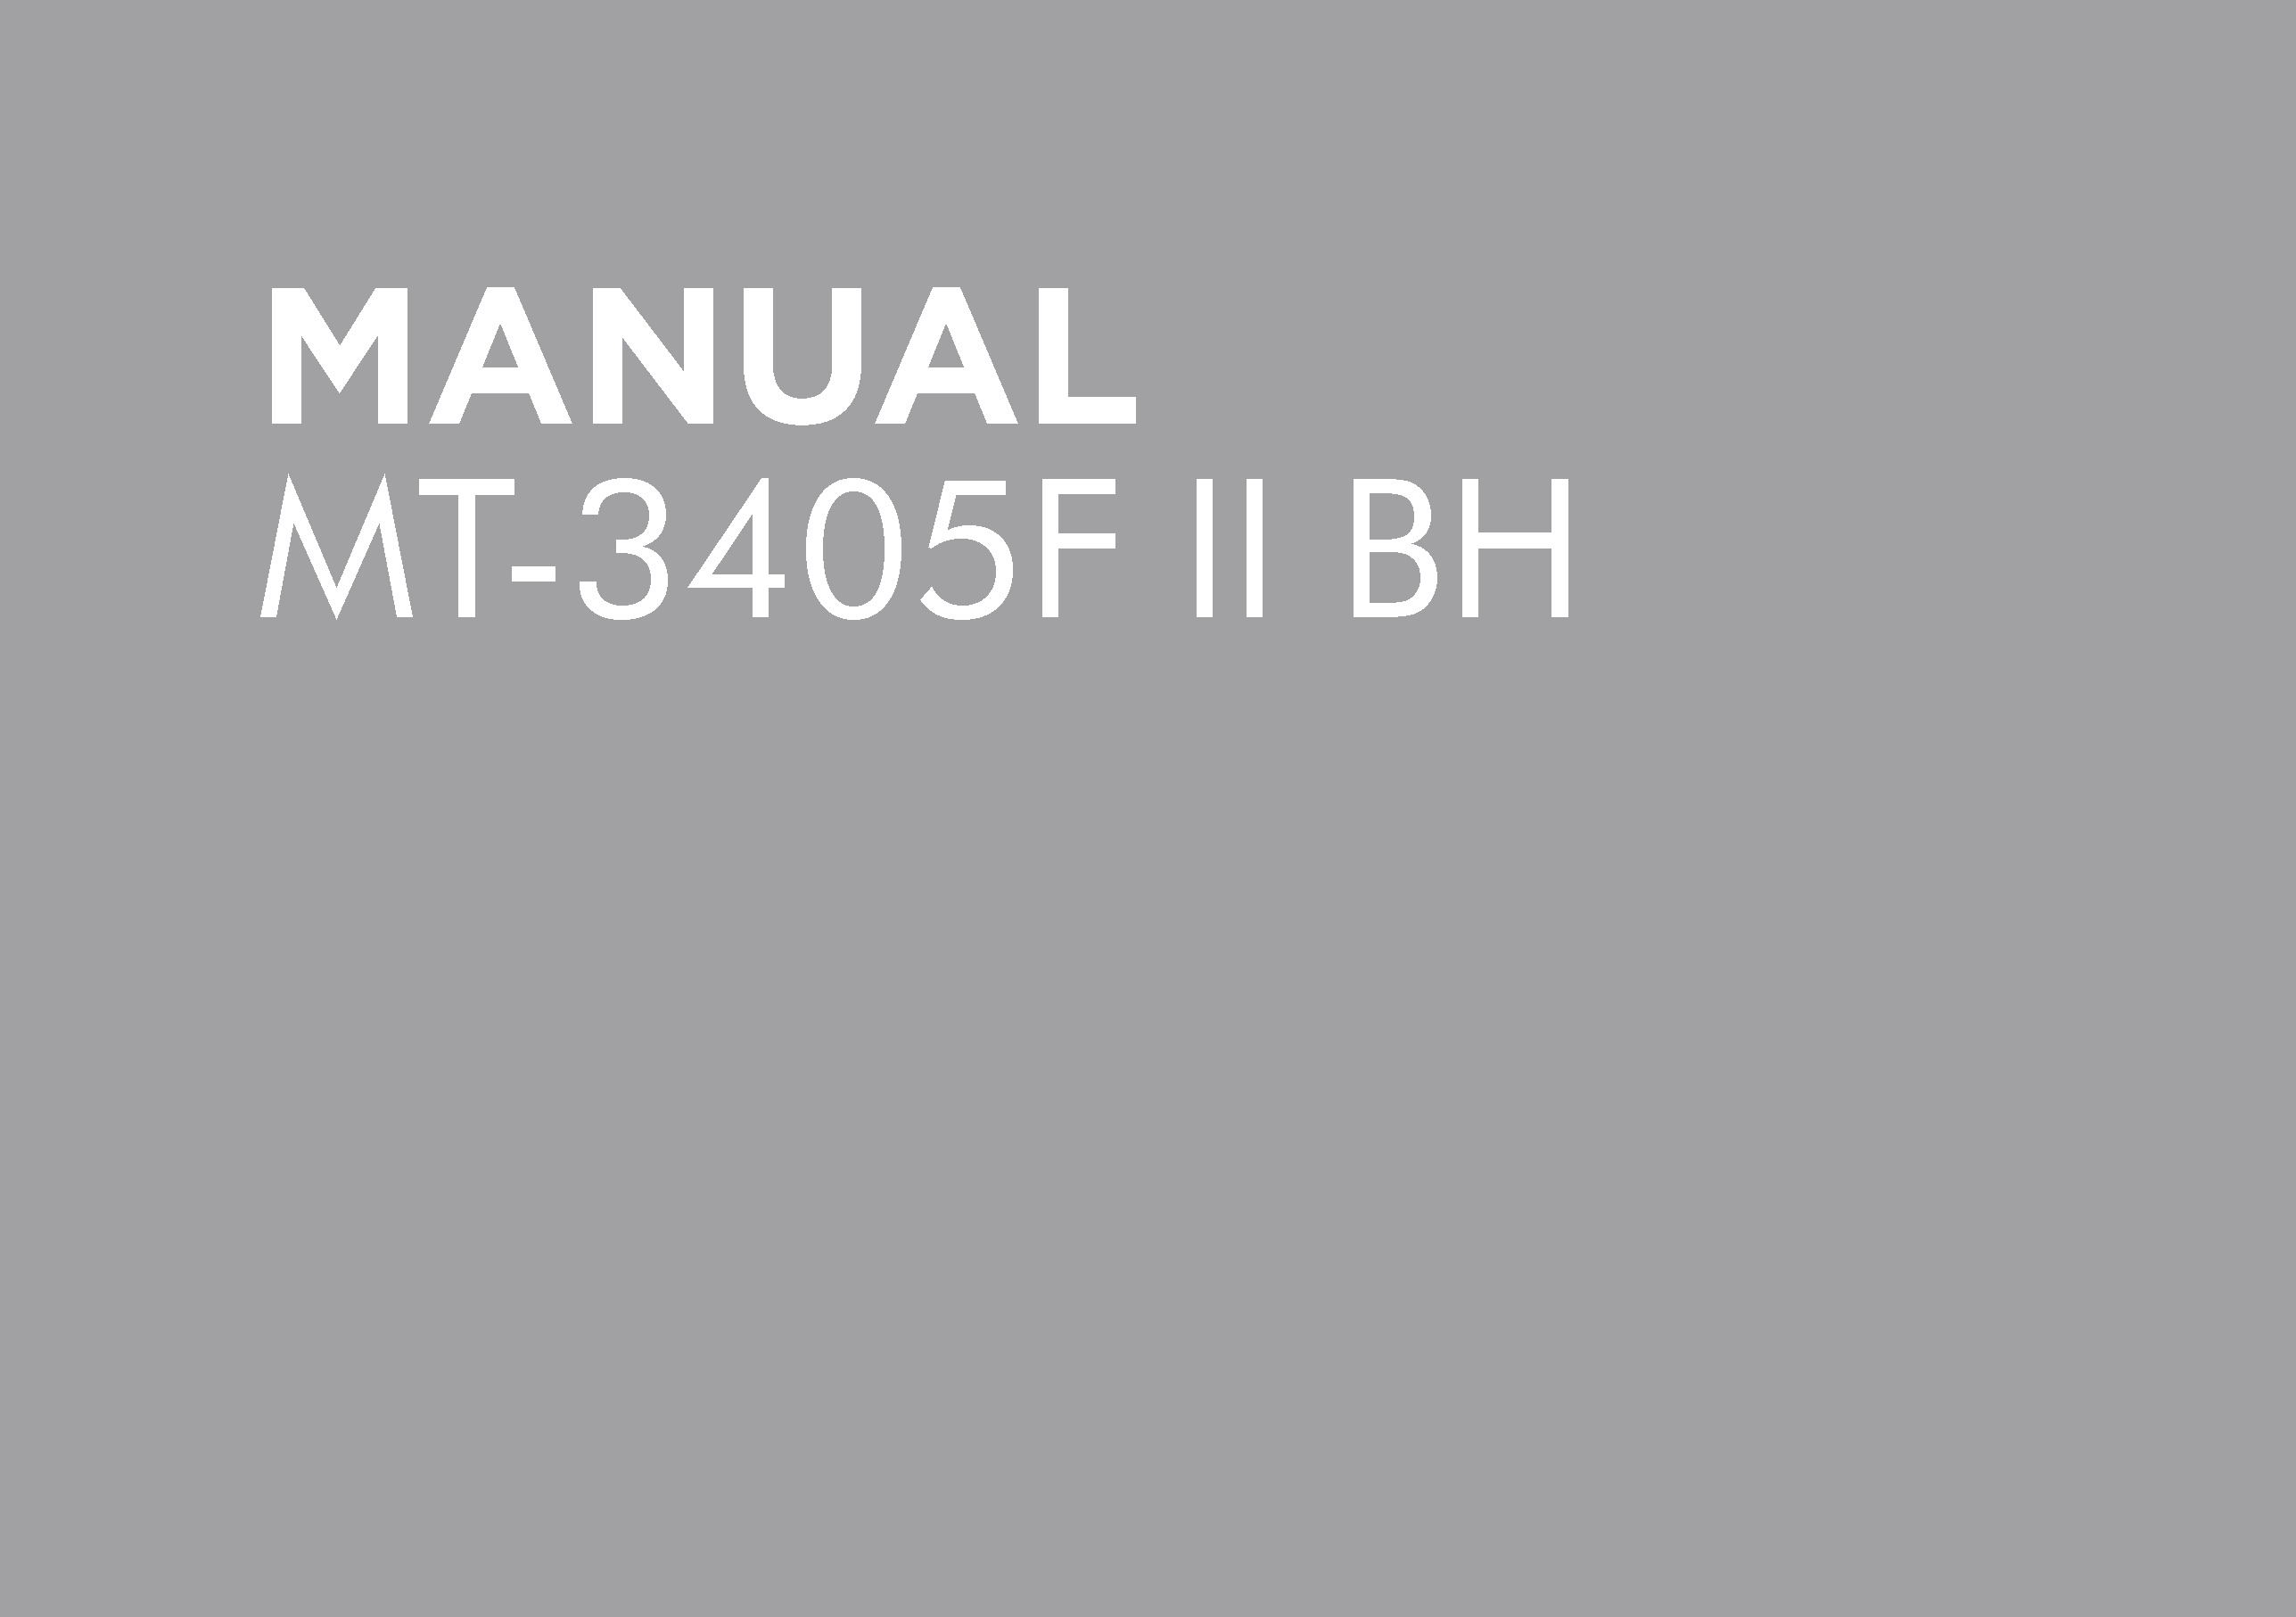 MT-3405F 11 BH OPERATORS MANUAL